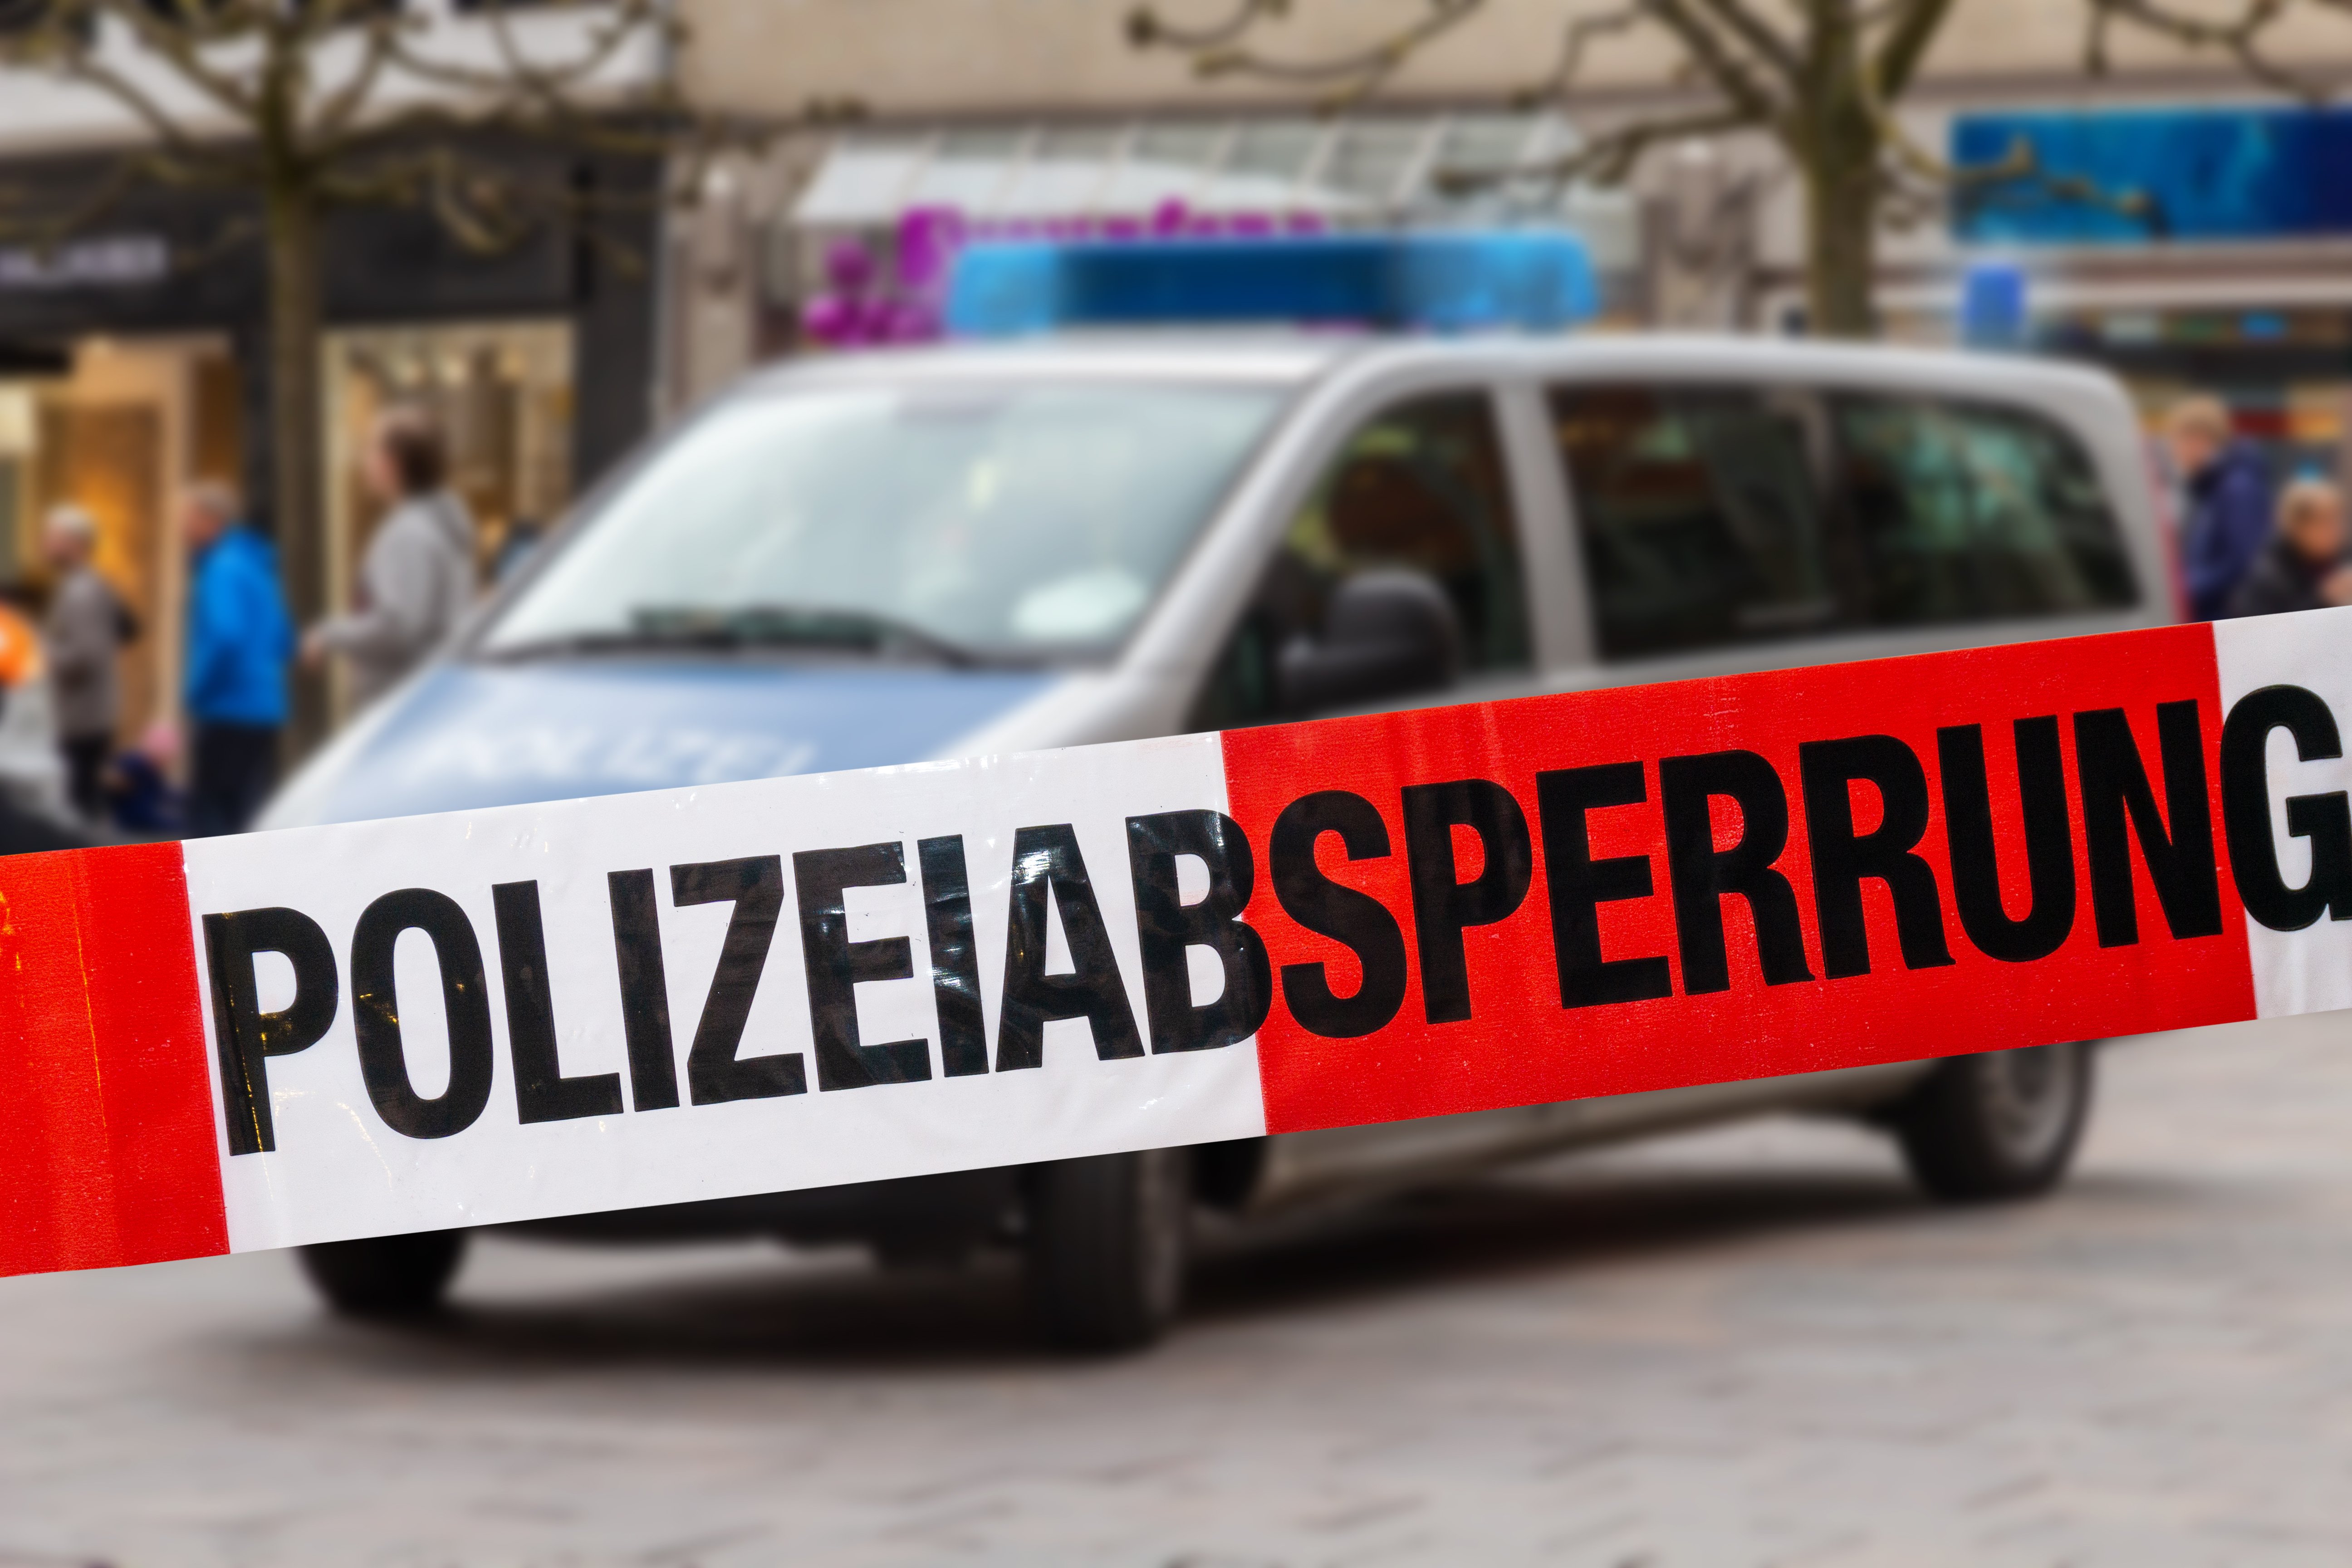 Deutsches Polizeiauto in der Stadt, das hinter Absperrband steht | Quelle: Shutterstock